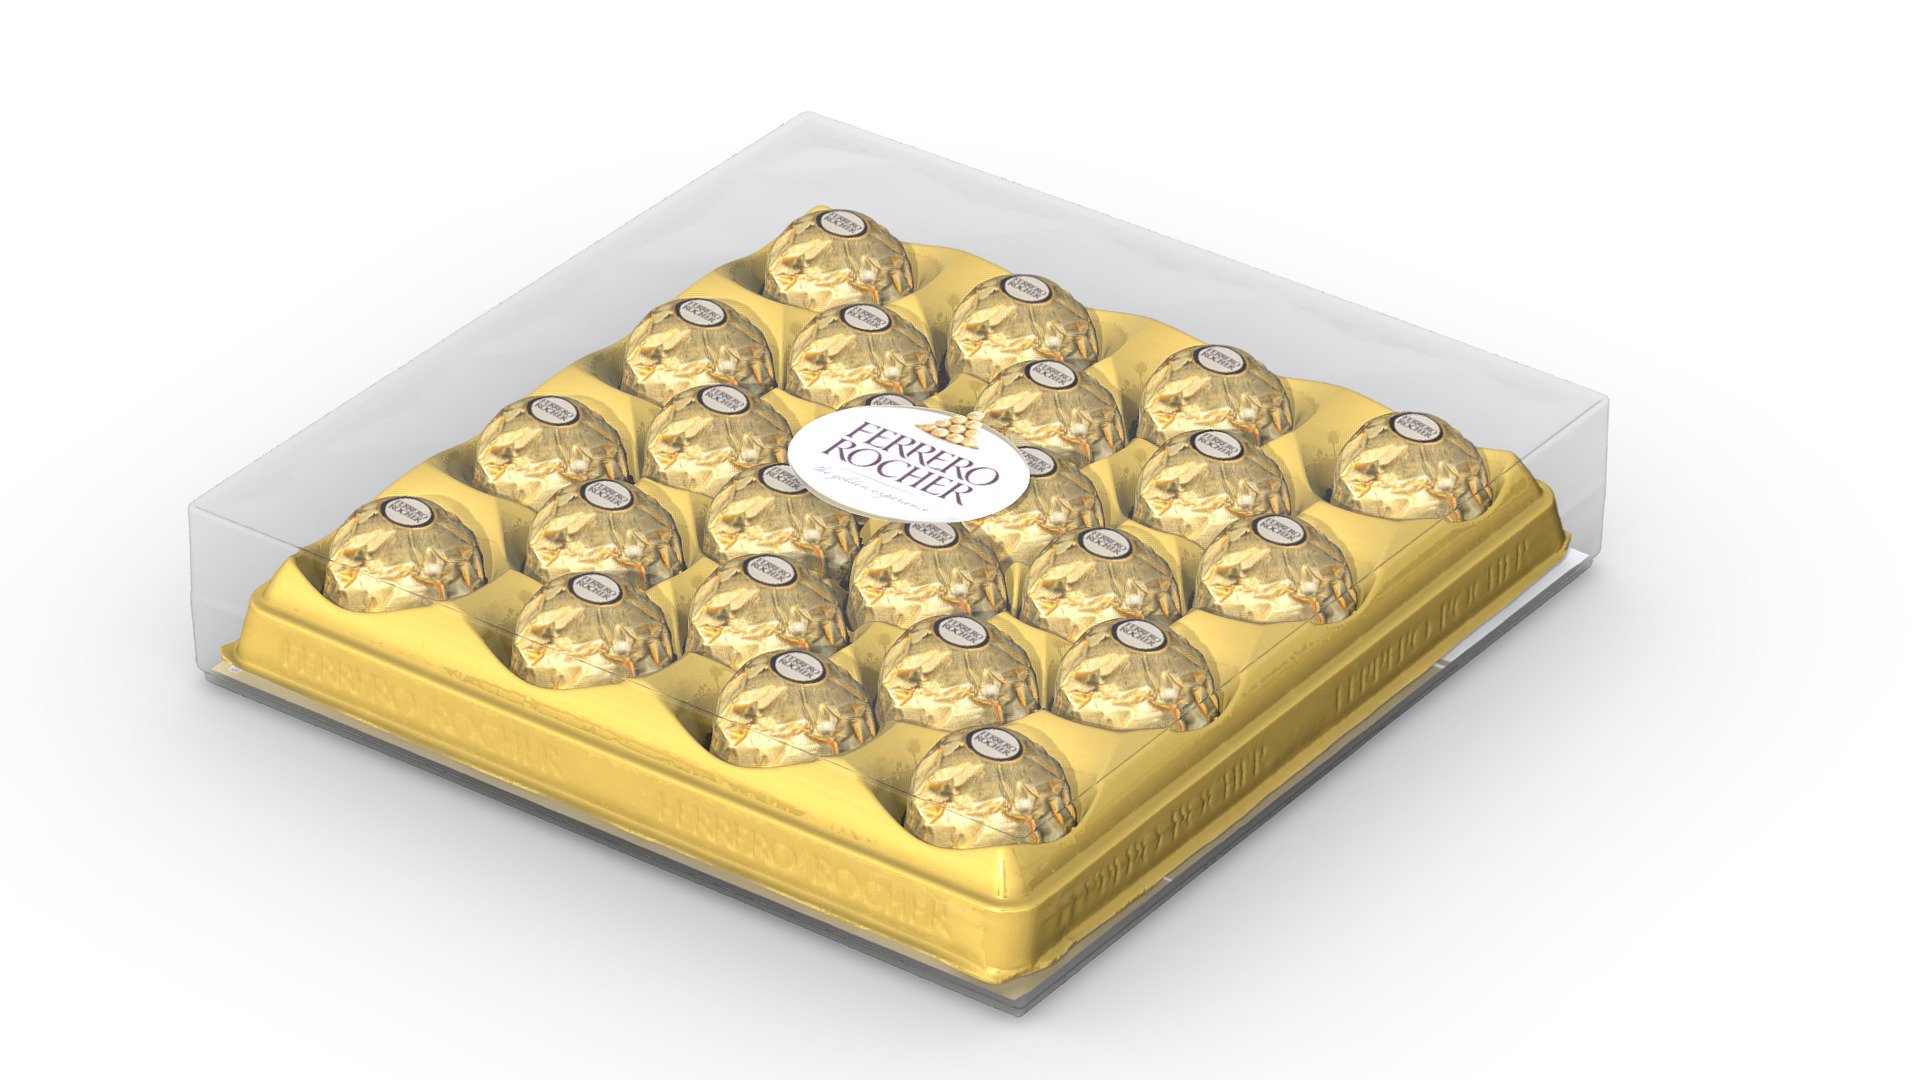 Ferrero Rocher - 3D model by Europac3d 3d model